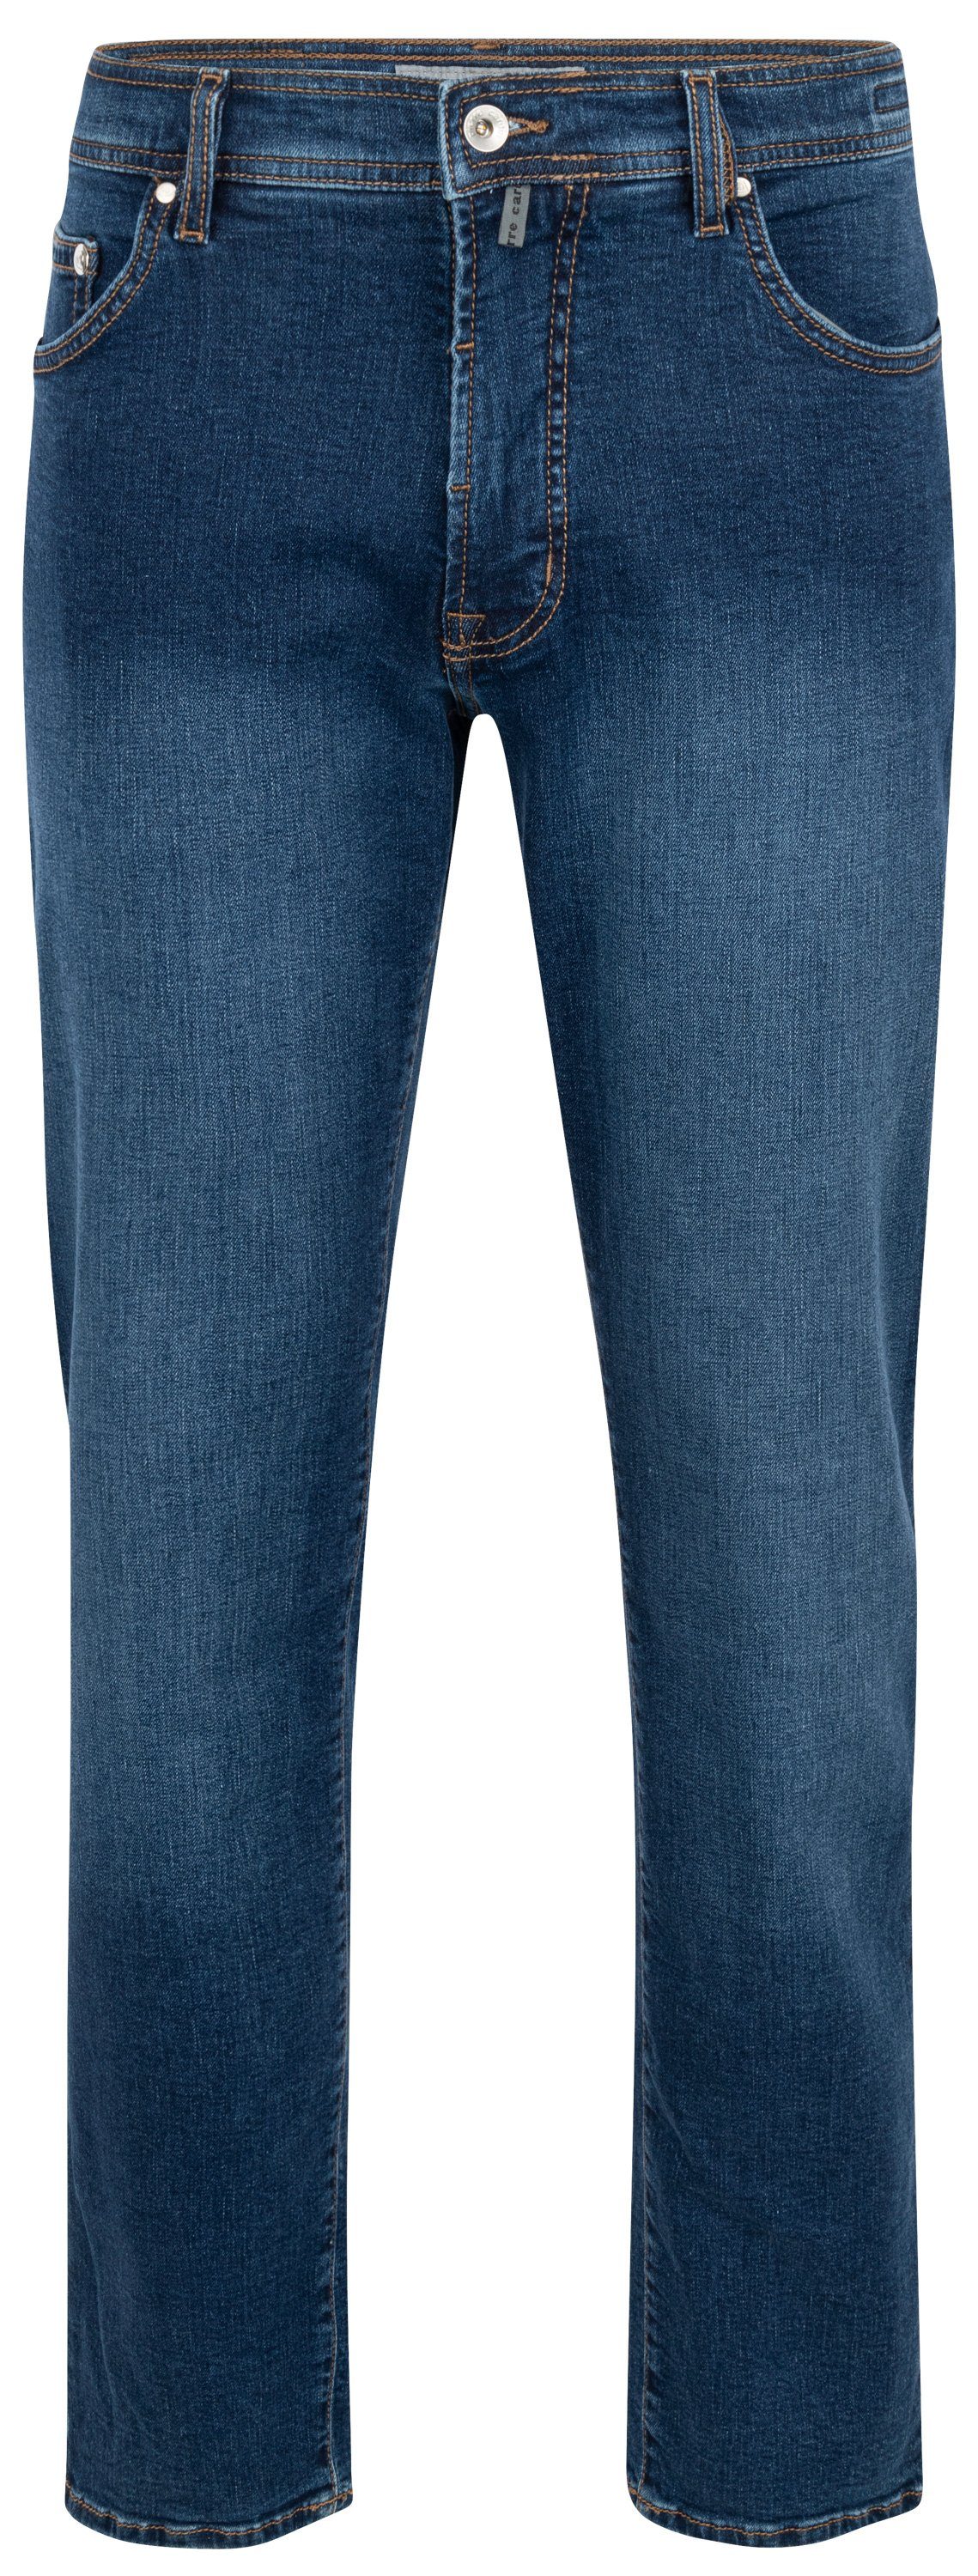 Pierre Cardin 5-Pocket-Jeans PIERRE CARDIN DEAUVILLE blue used buffies 31960 7106.6824 | Straight-Fit Jeans